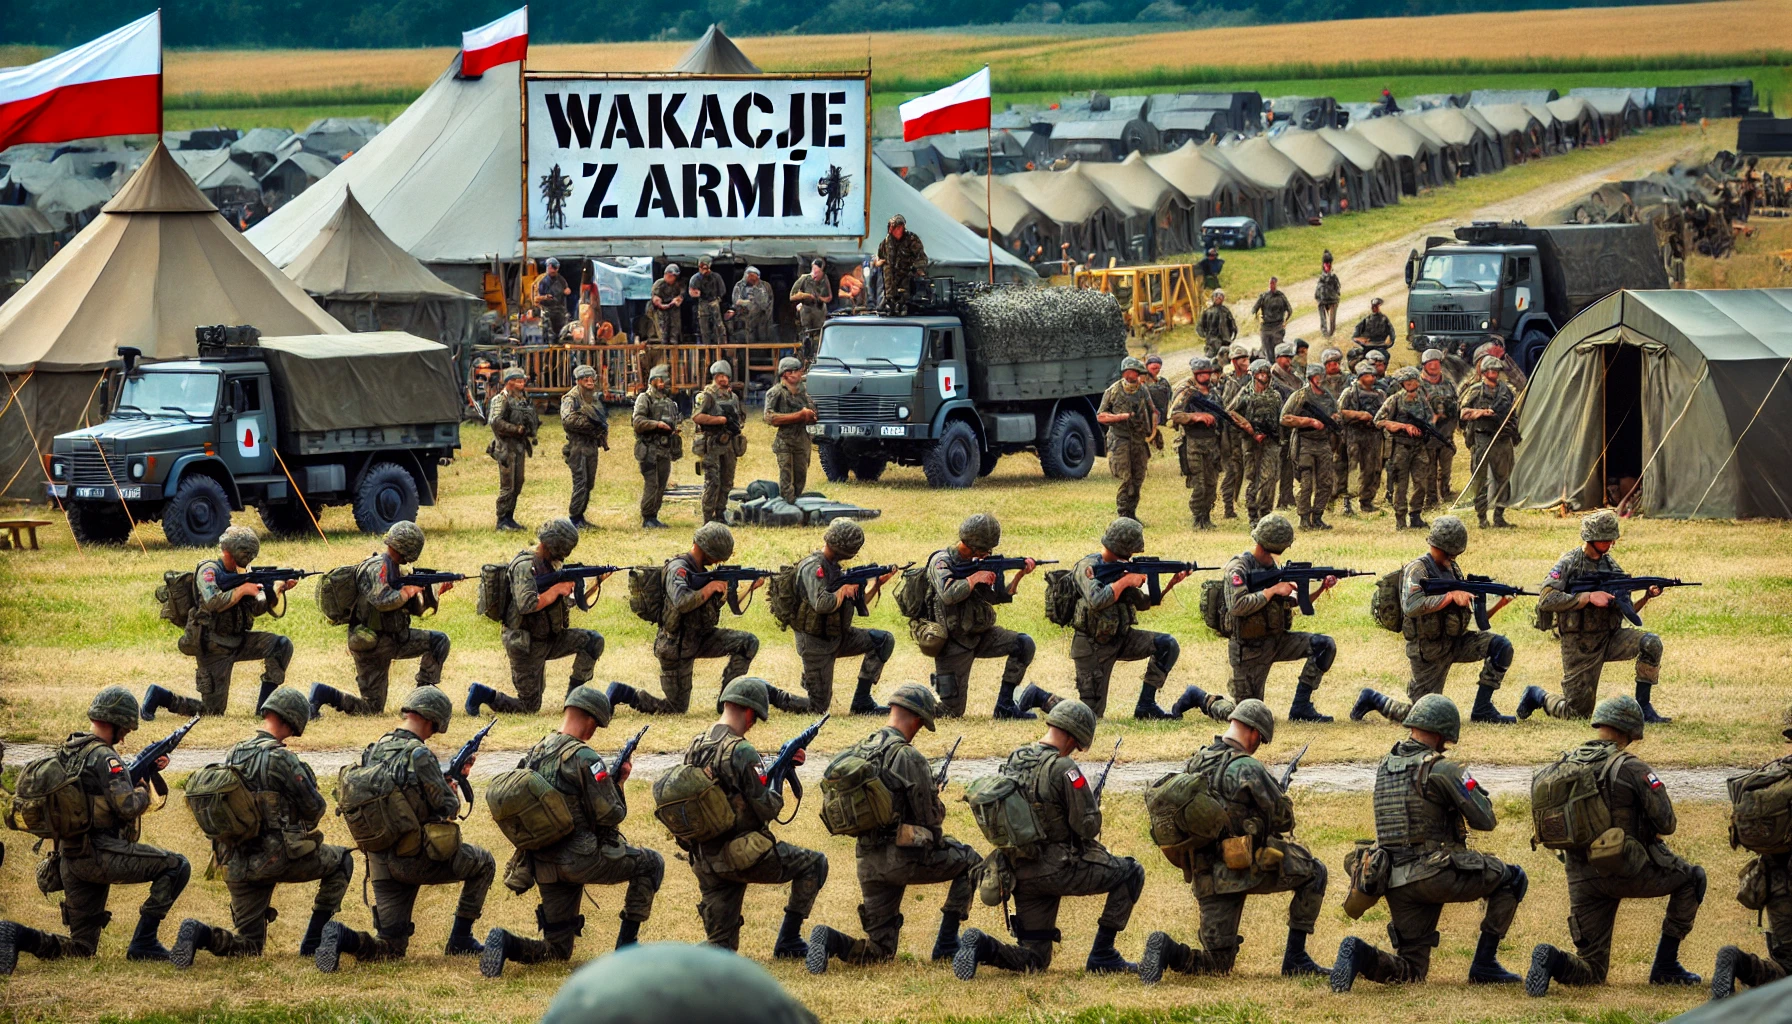 Polska przygotowuje się do potencjalnego konfliktu z Rosją dzięki programowi „Wakacje z armią”